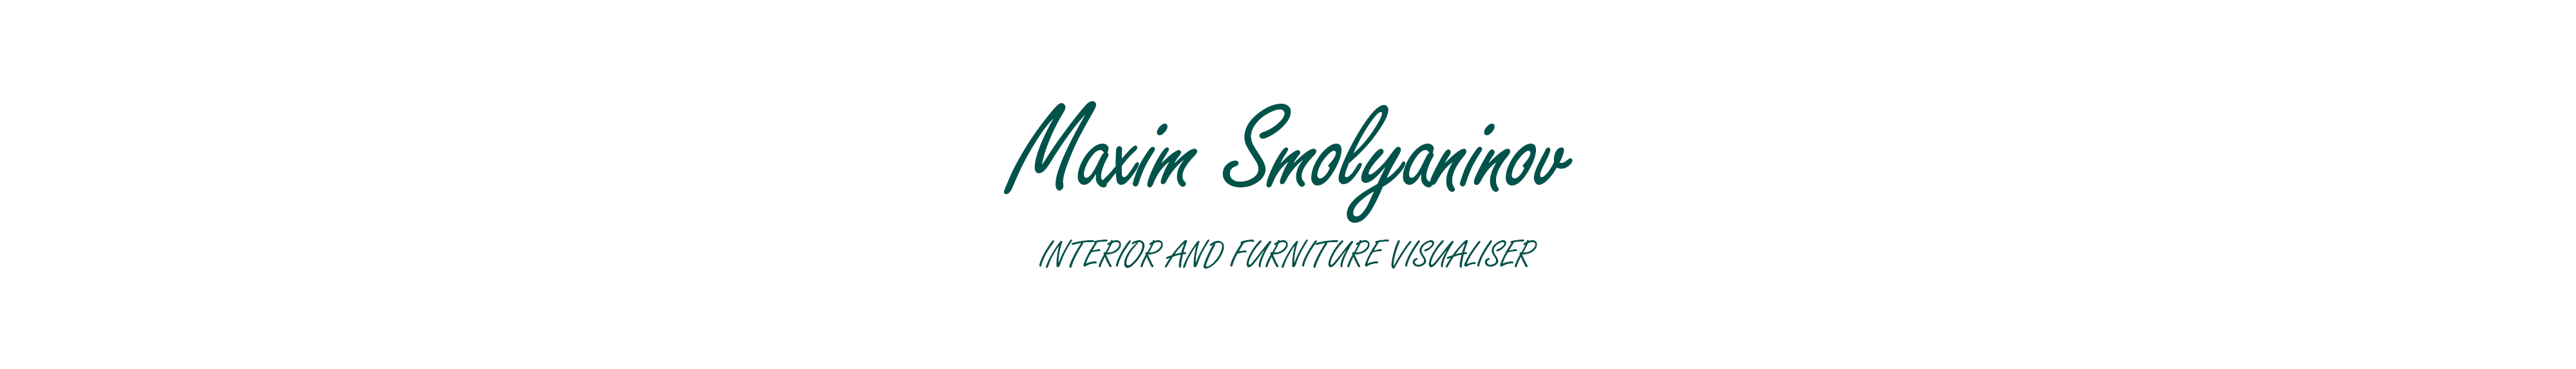 Maxim Smolyaninov's profile banner